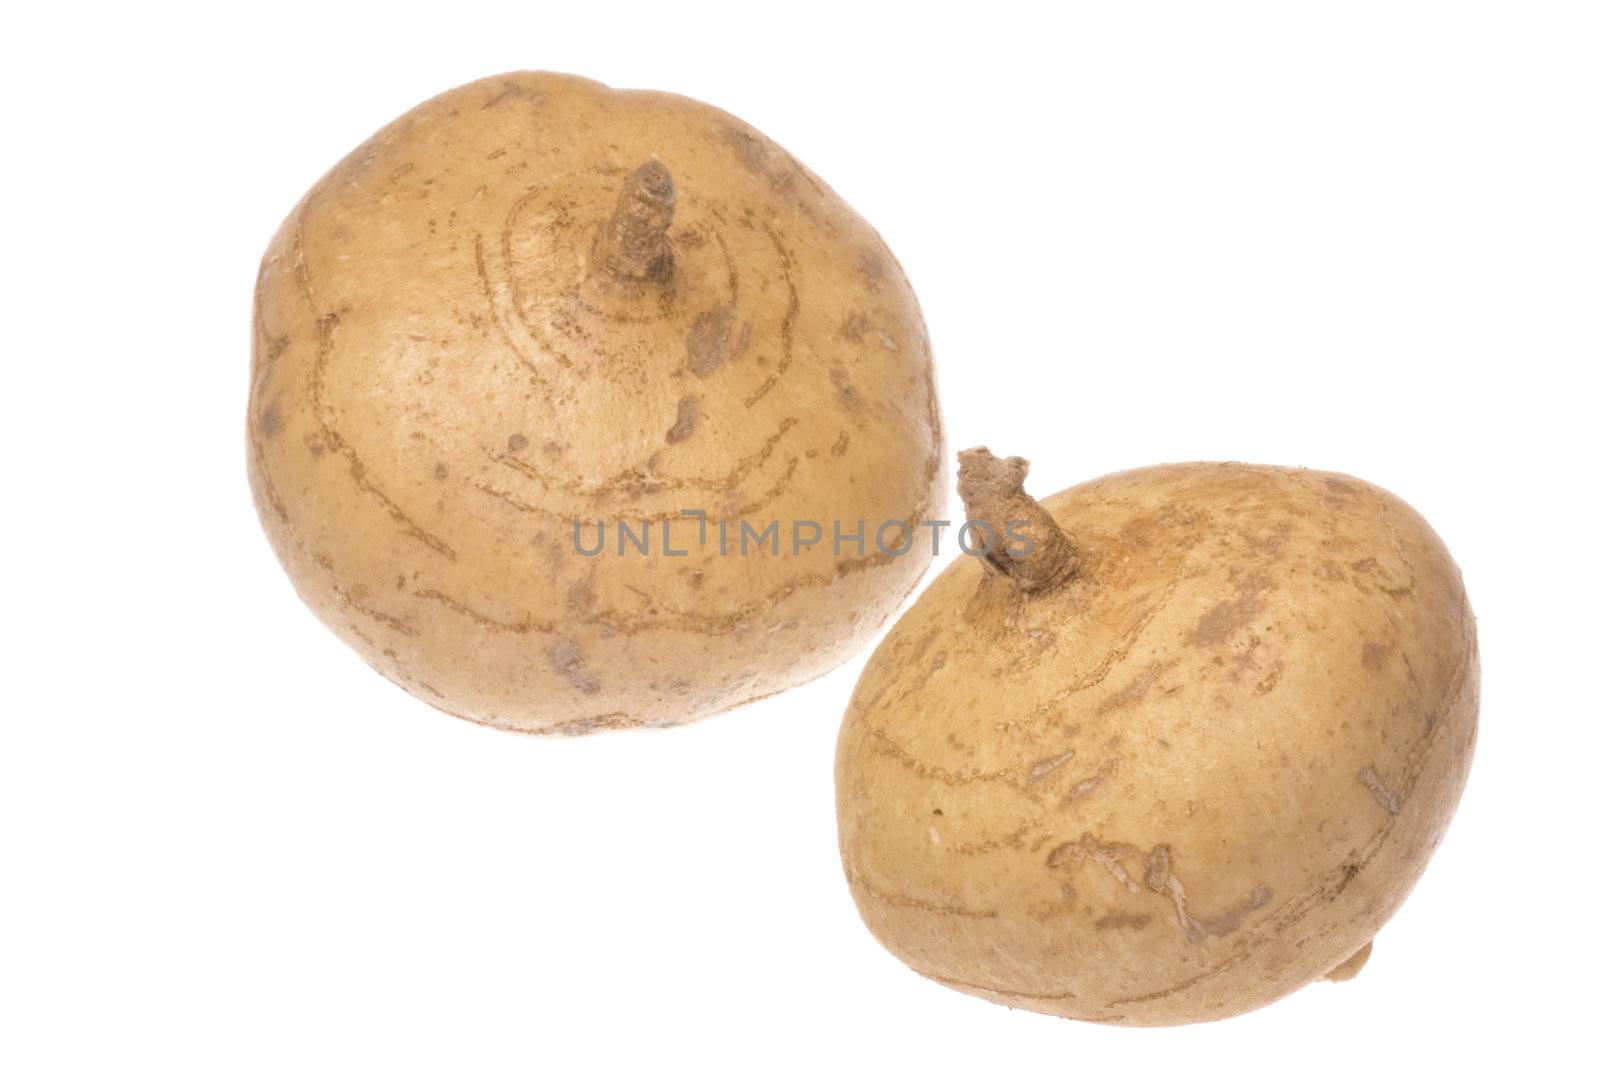 Isolated image of fresh turnips.